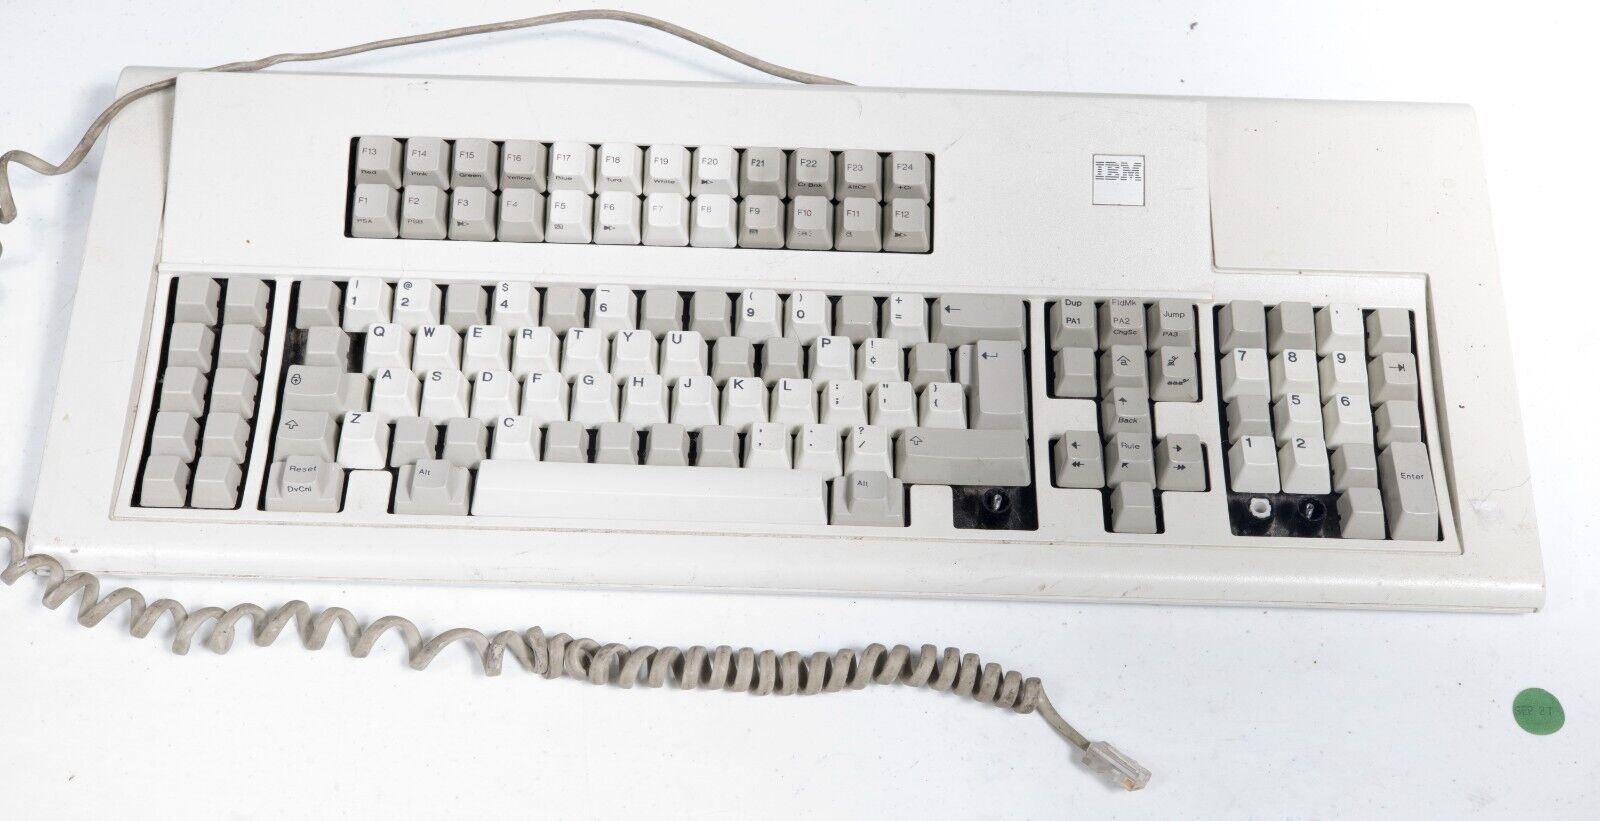 Vintage IBM 3191 Terminal 122 Key Keyboard 1390238 mainframe ST533